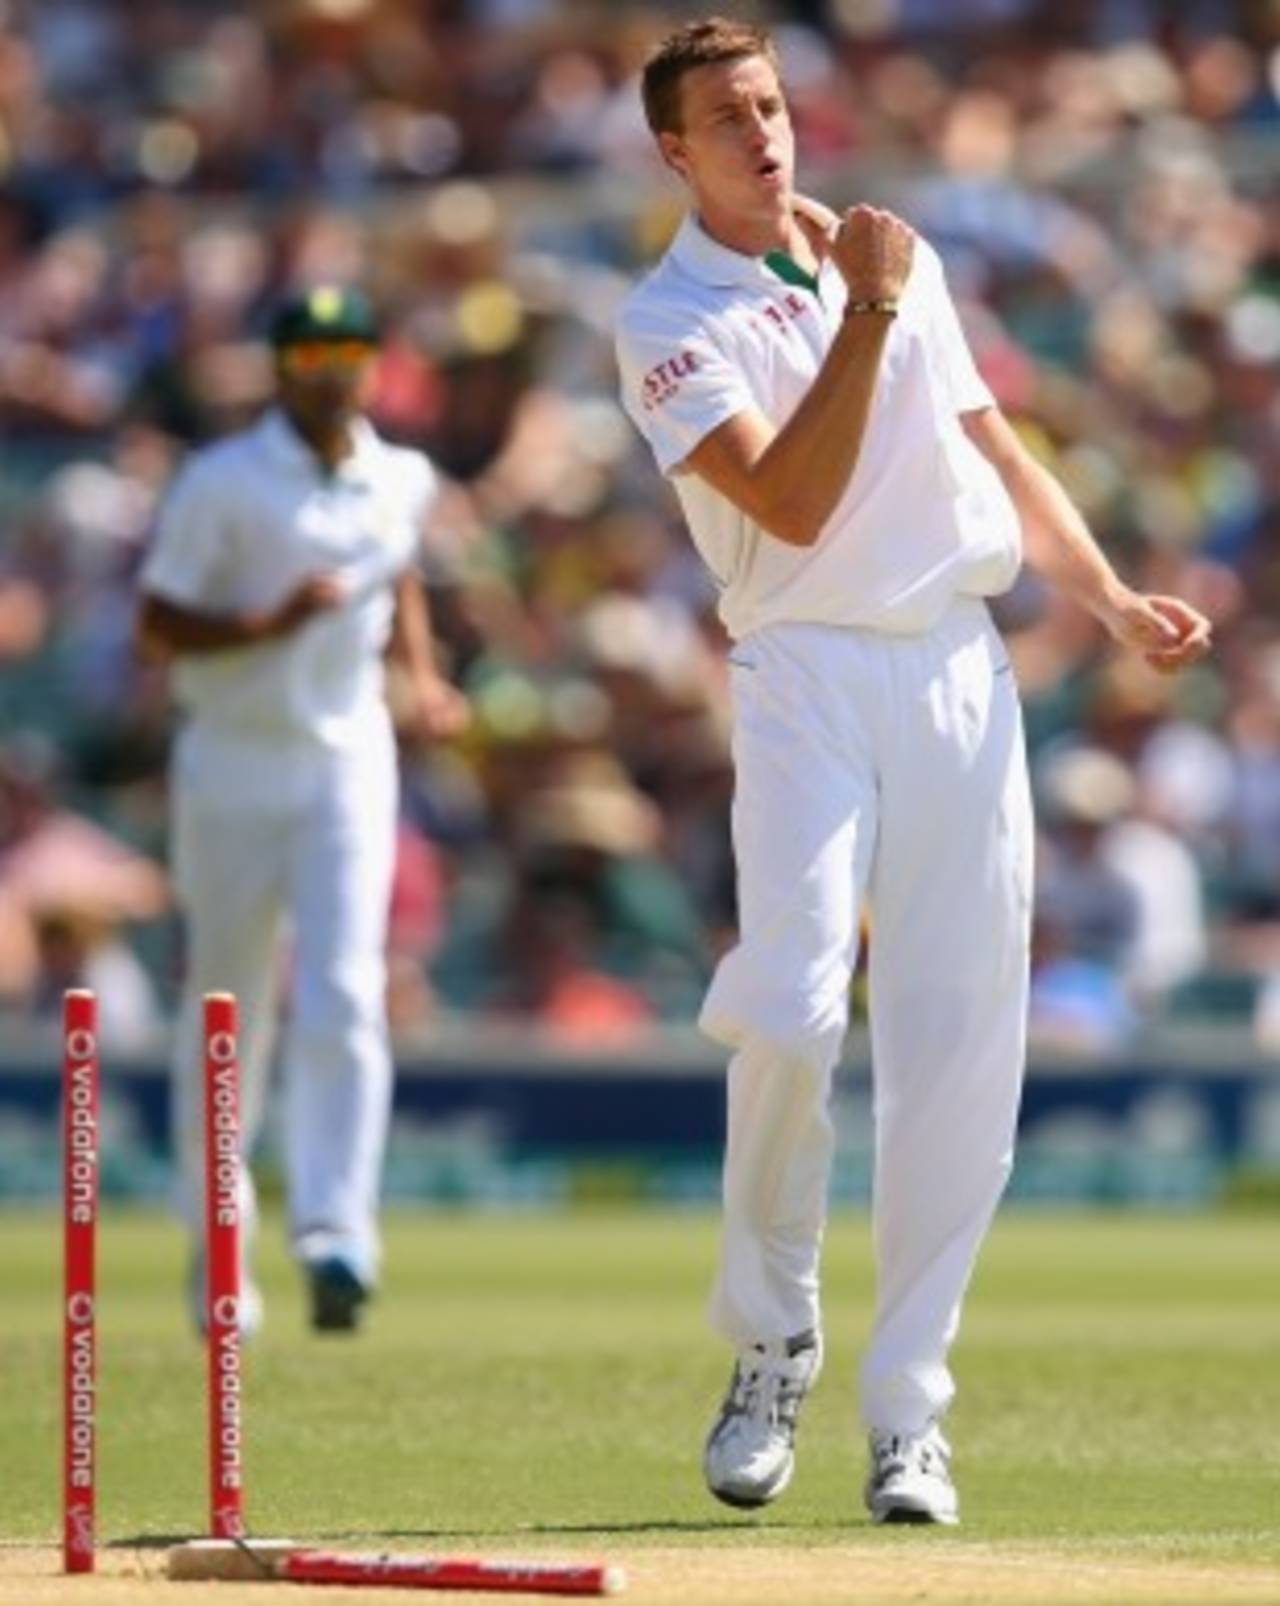 Morne Morkel celebrates after bowling Michael Clarke, Australia v South Africa, 2nd Test, Adelaide, 2nd day, November 23, 2012